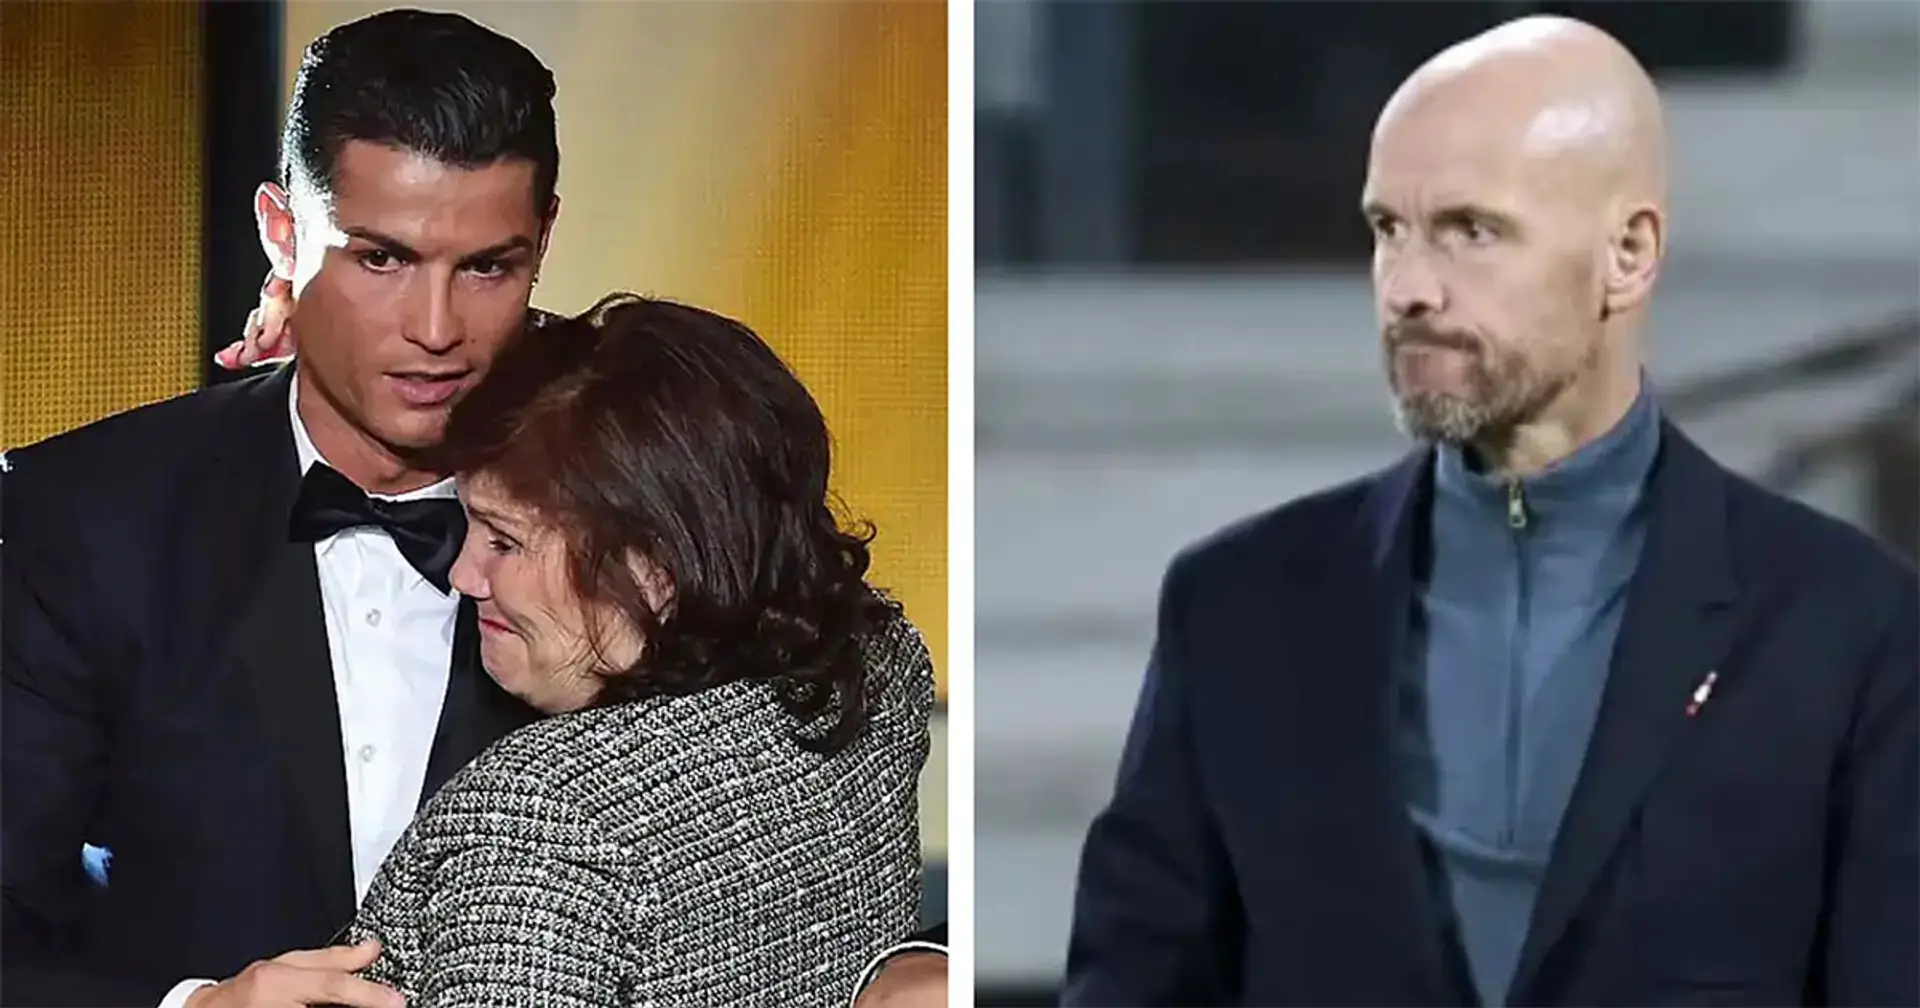 Ronaldos Mutter hat Ten Hag in den sozialen Medien aufgefordert, sich zu v**pissen. Sie repostete einen Beitrag von Luis Osorio, der dem Trainer gegenüber unhöflich war 